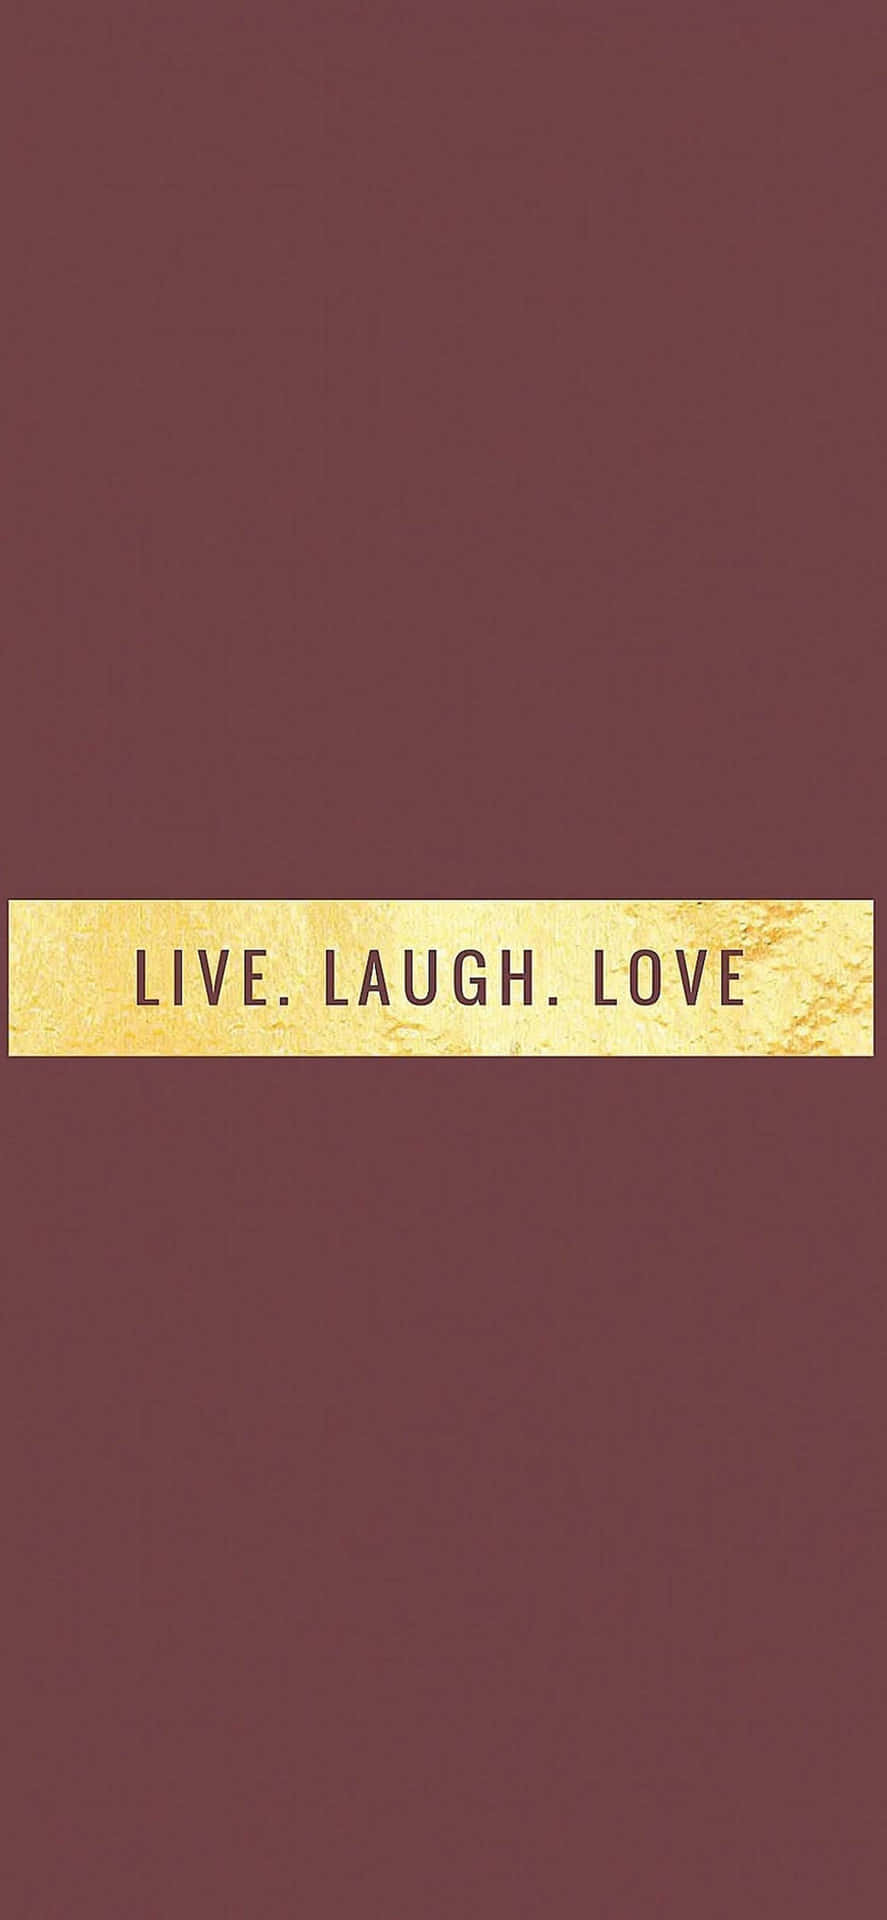 Nyd livet, del ler og find ægte kærlighed. Wallpaper